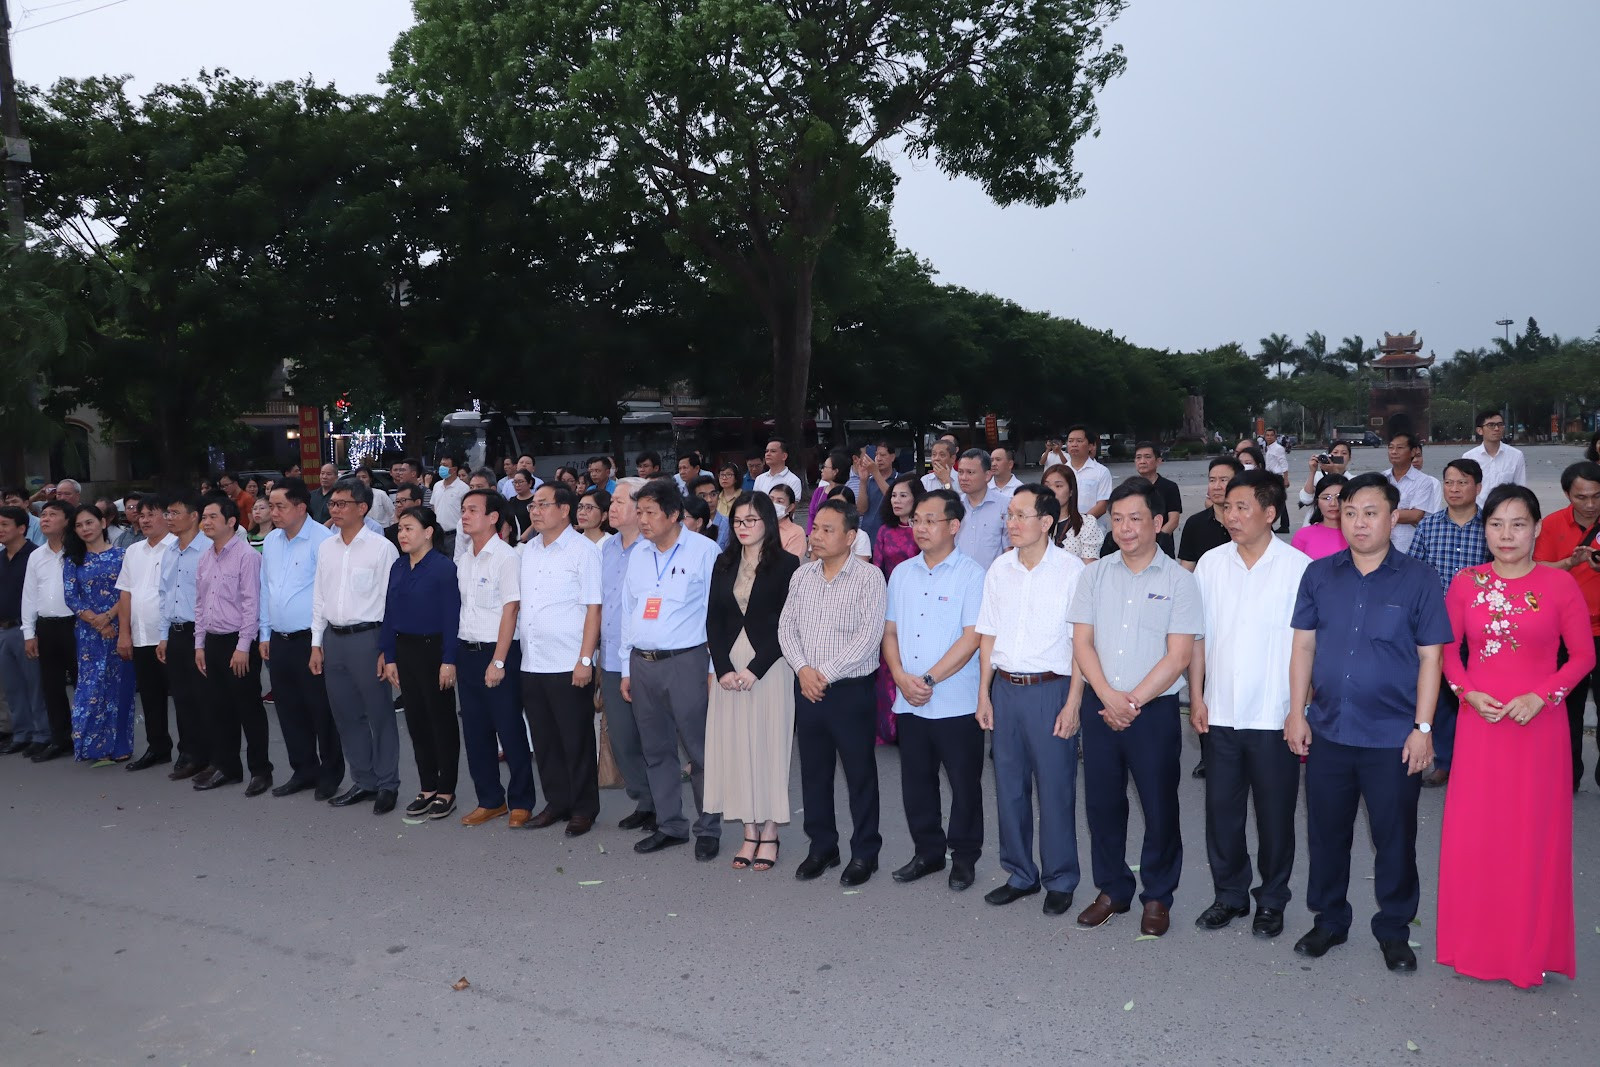 Đoàn Hội thảo Báo Đảng các tỉnh, thành phố khu vực miền Trung - Tây Nguyên tổ chức đêm hoa đăng tri ân các anh hùng liệt sĩ trên sông Thạch Hãn